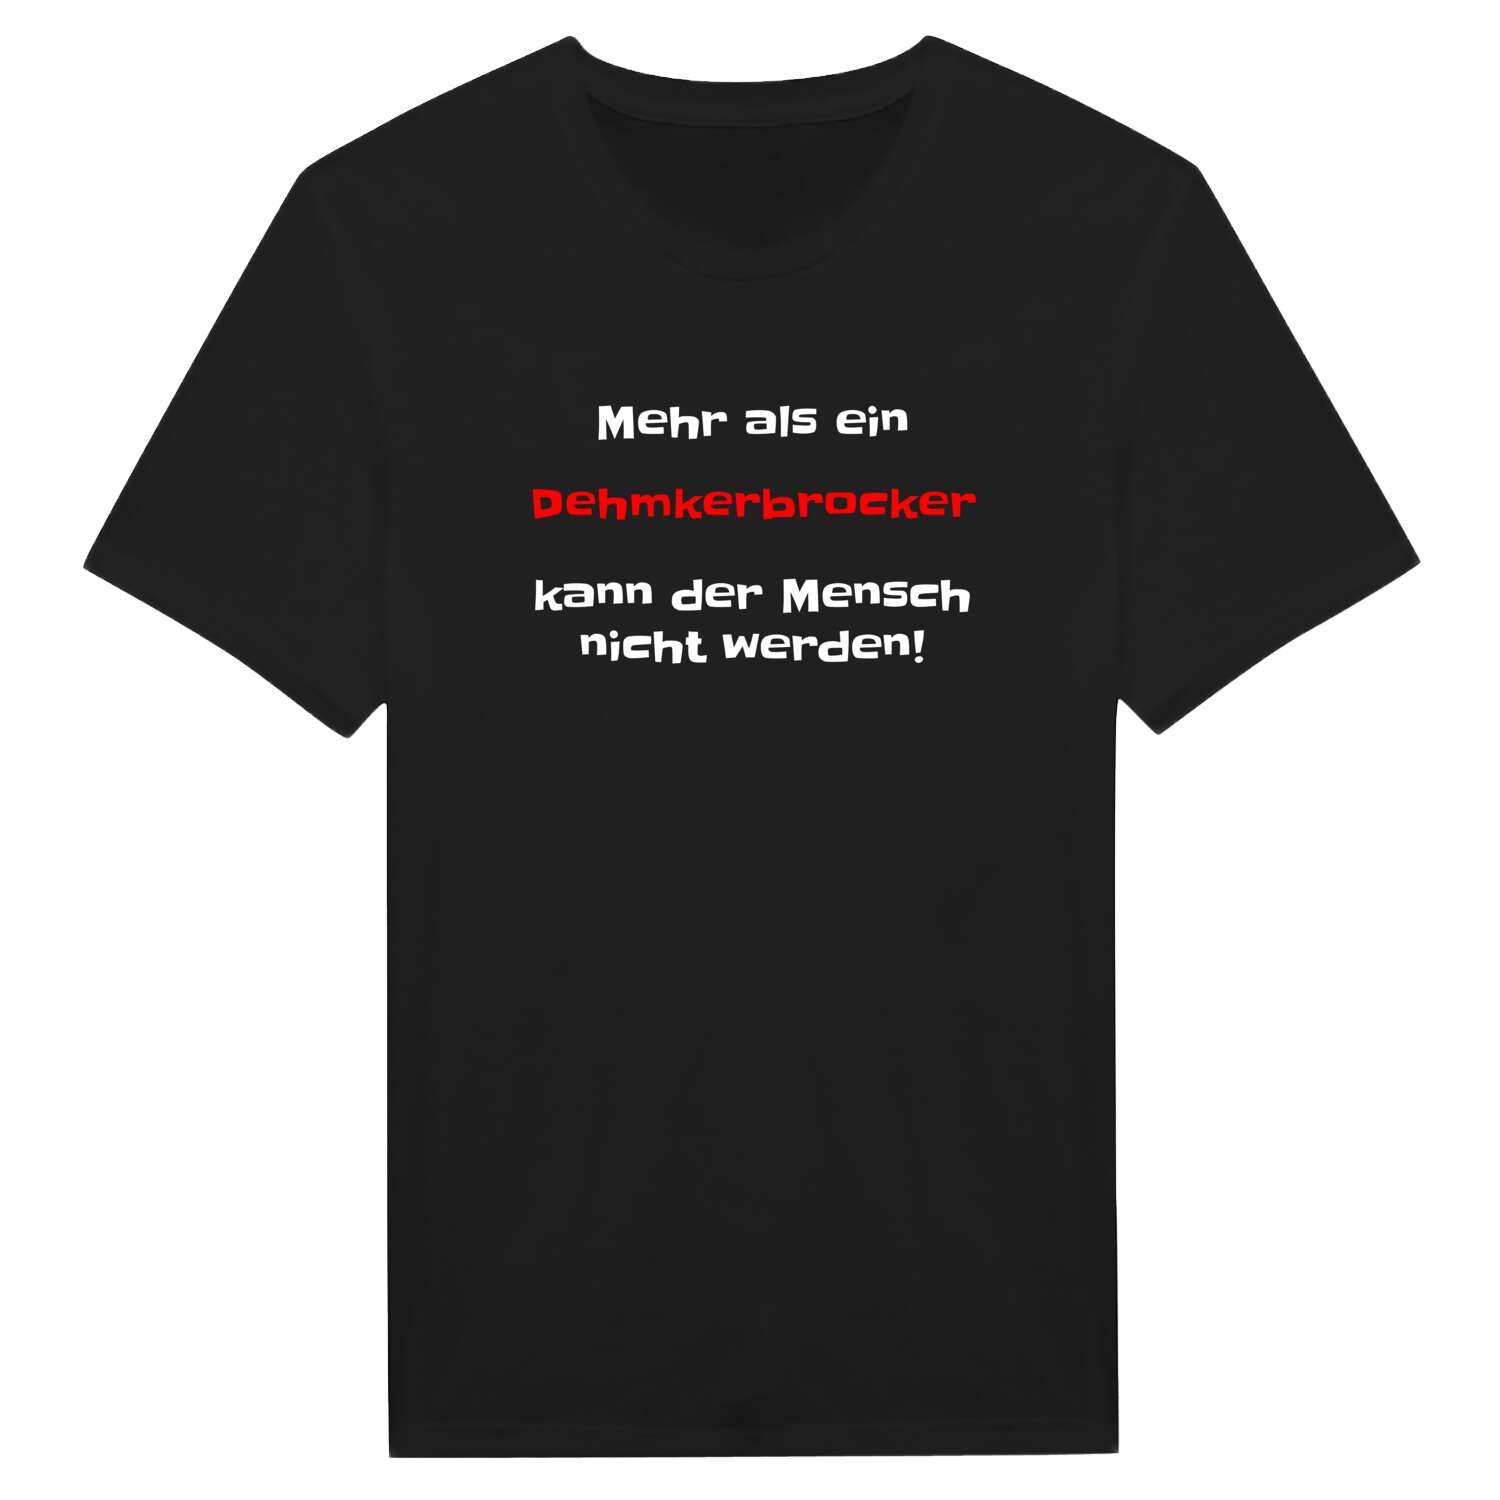 Dehmkerbrock T-Shirt »Mehr als ein«